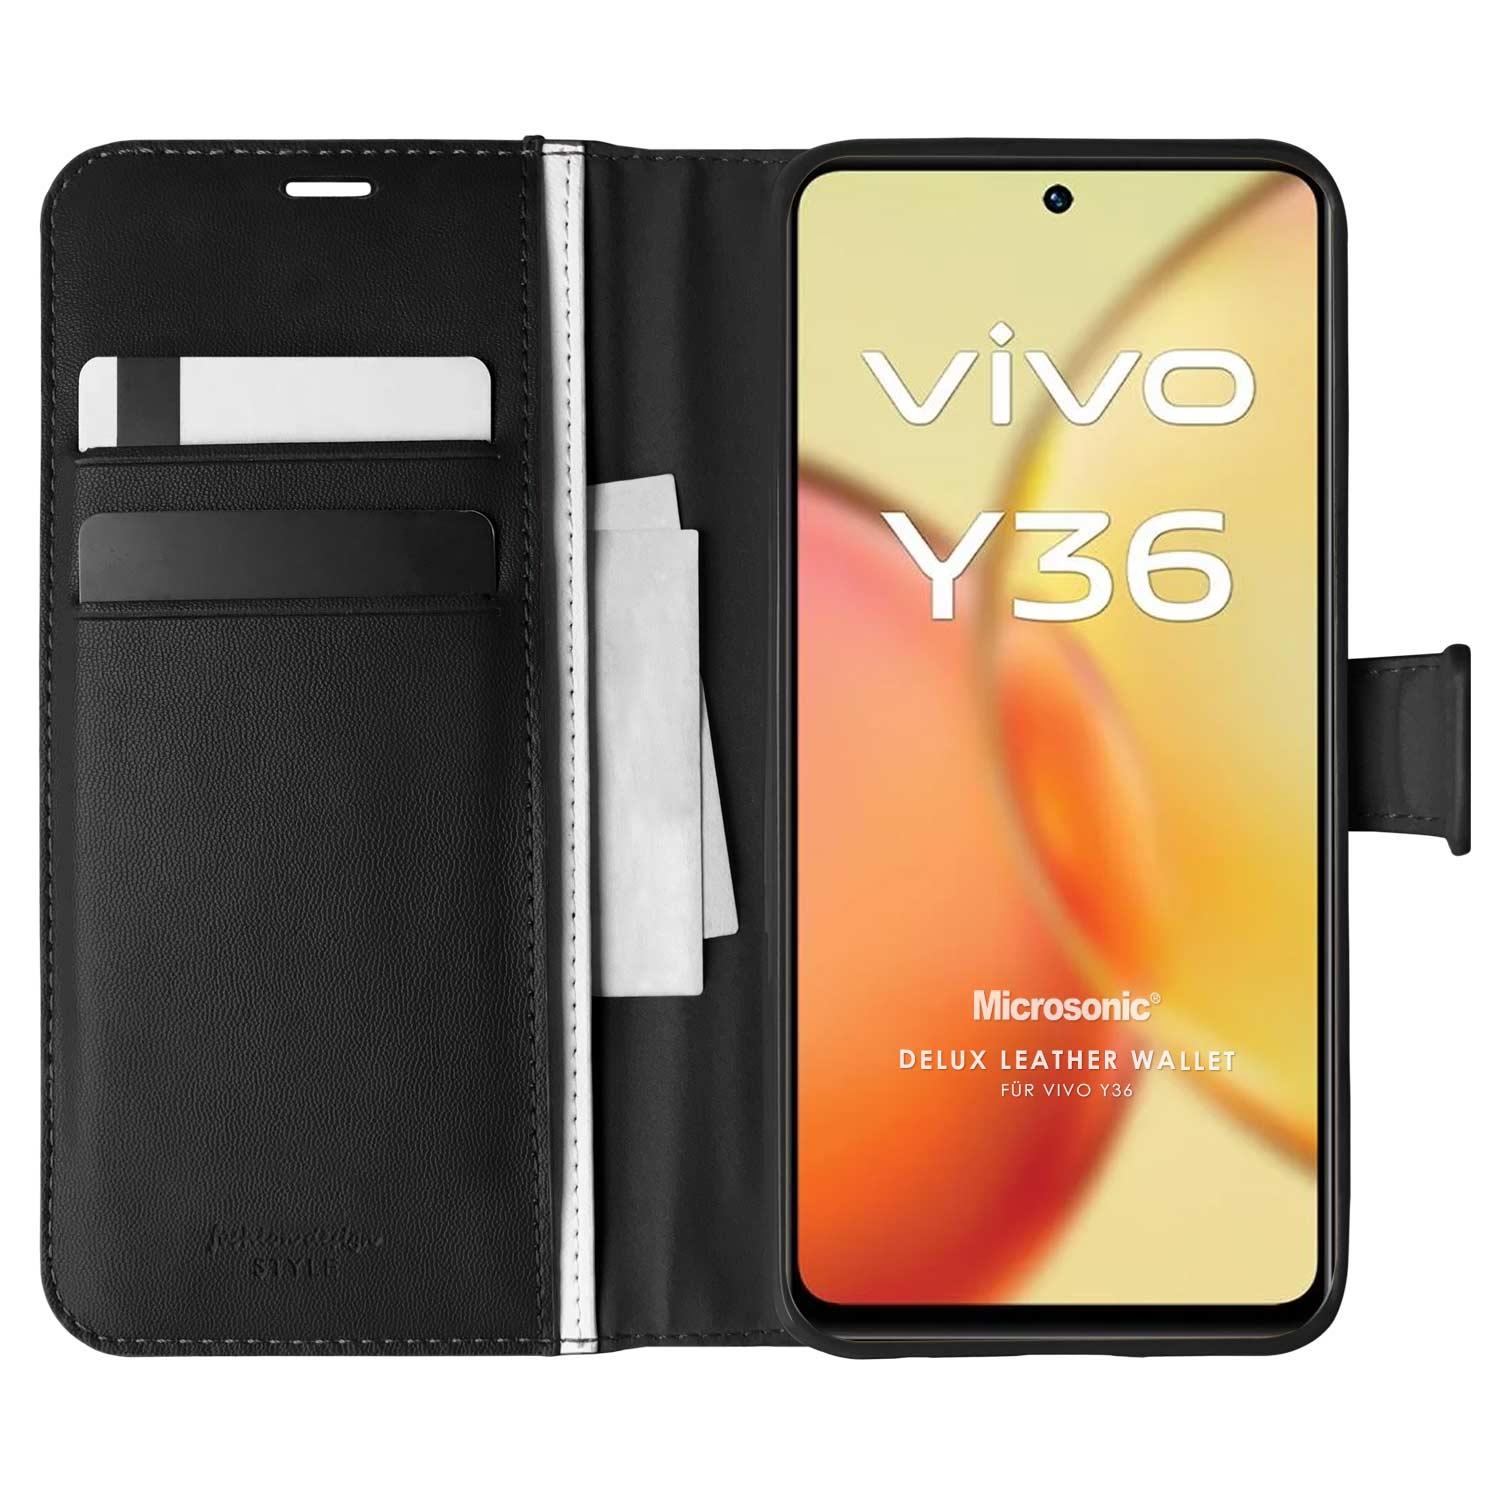 Microsonic Vivo Y36 Kılıf Delux Leather Wallet Siyah